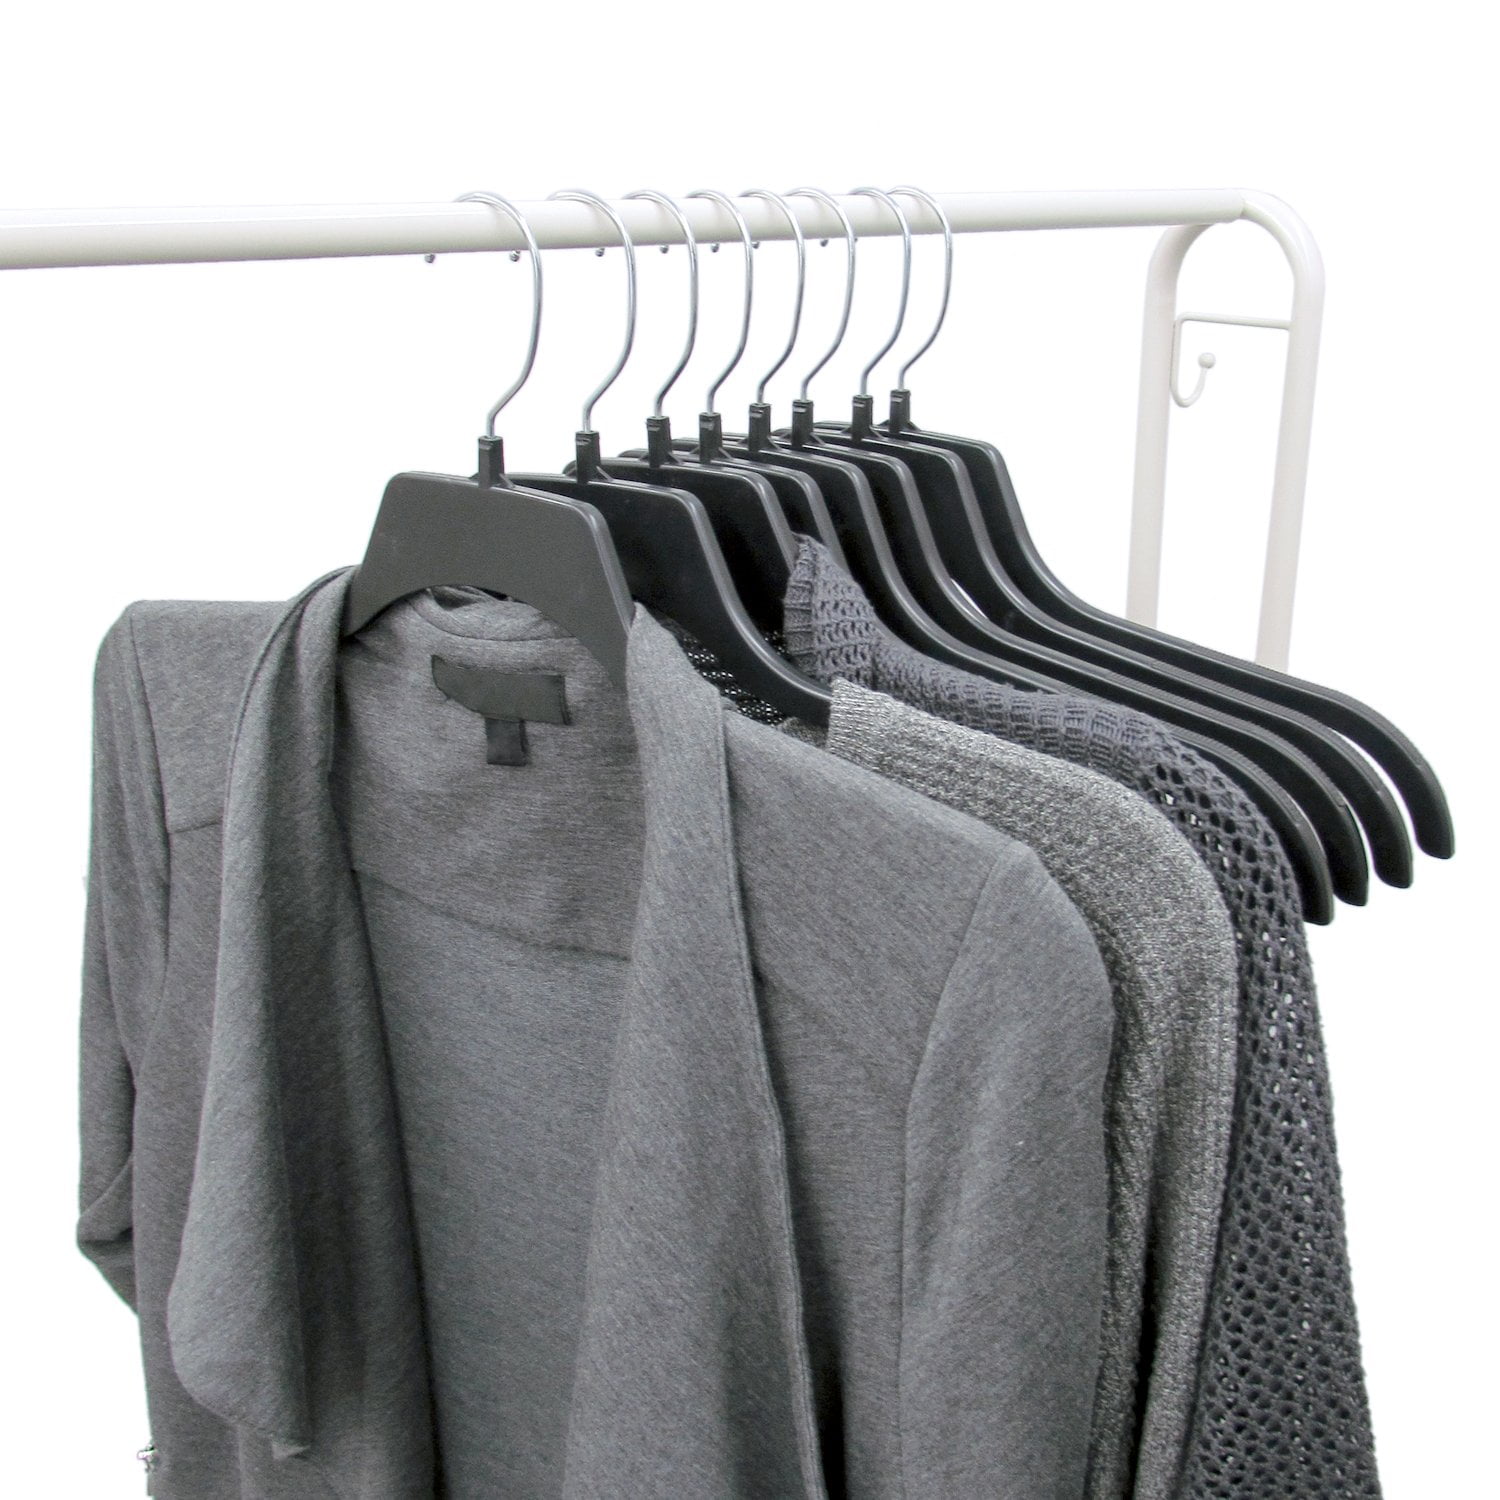 Heavy Duty Plastic Hangers, 18 Lined Garment Racks. Non-slip